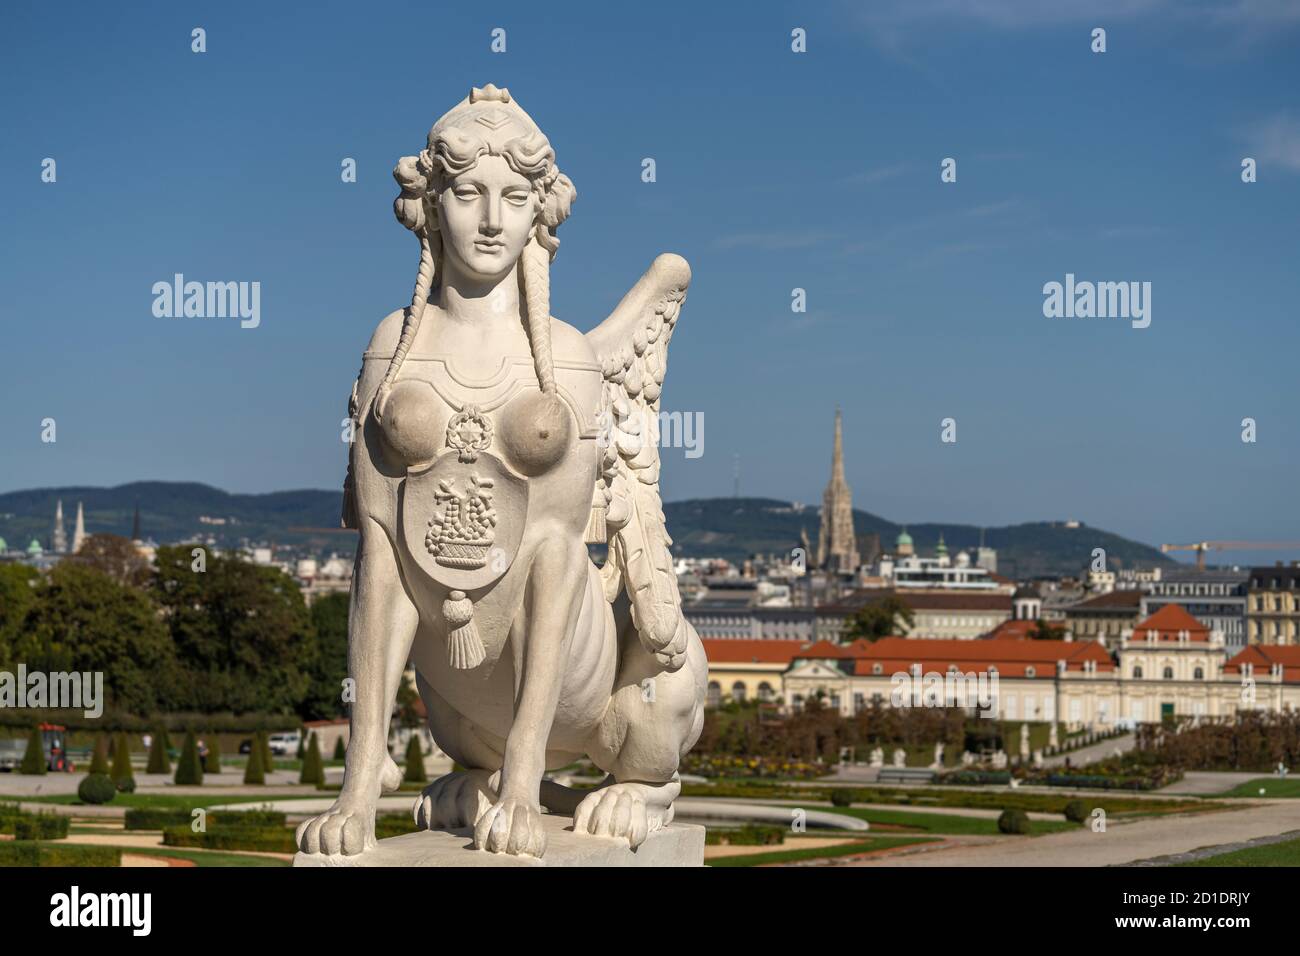 Sphinx im Schlossgarten Belvédère à Vienne, Österreich, Europa | Sphinx dans les jardins du Belvédère à Vienne, Autriche, Europe Banque D'Images